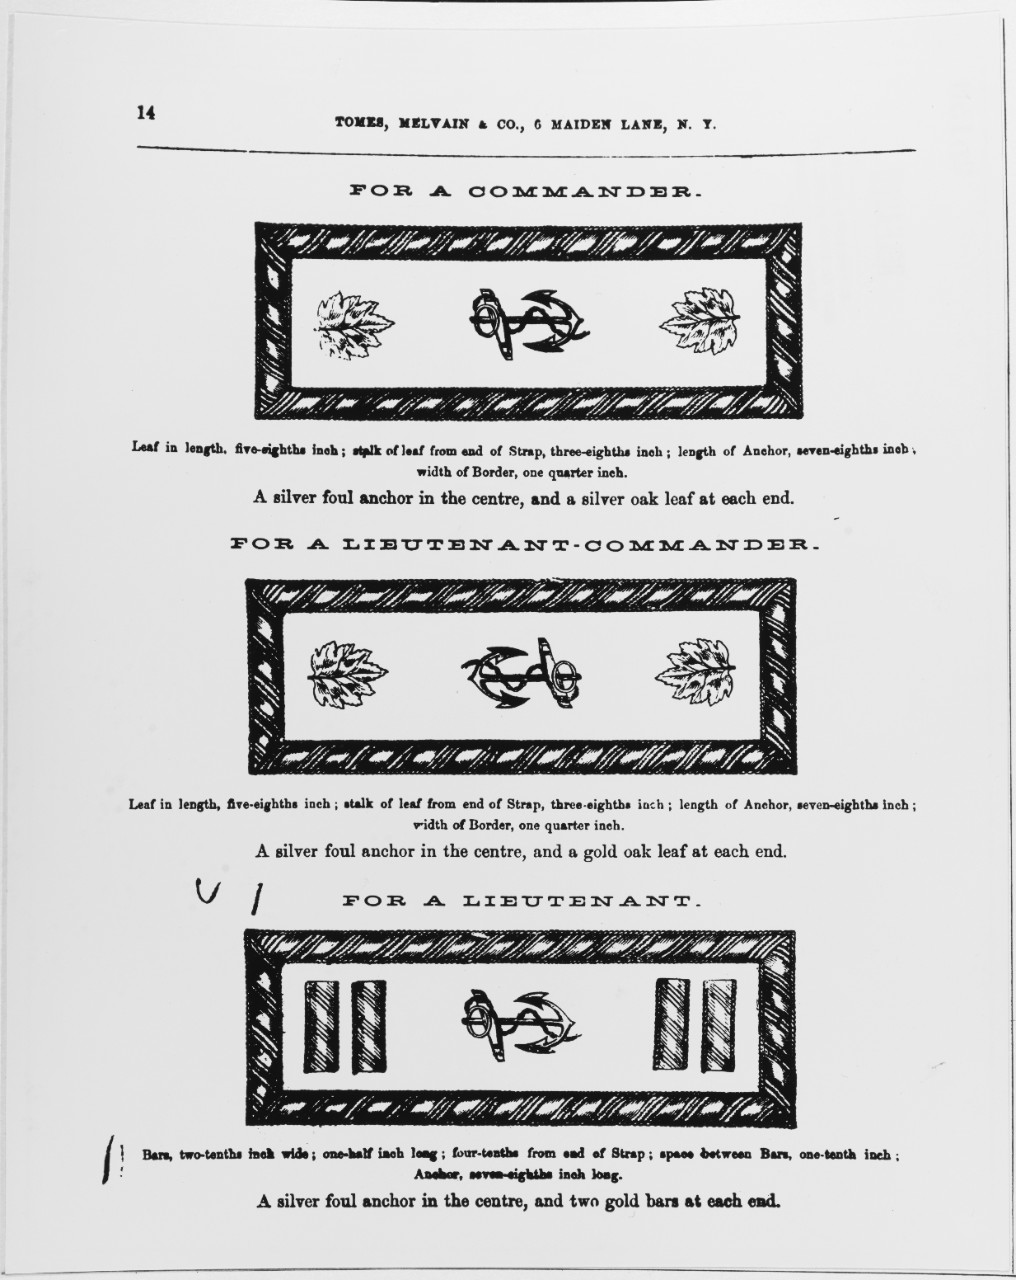 Uniform Regulations, 1864. Shoulder Insignia for a Commander, Lieutenant Commander, Lieutenant